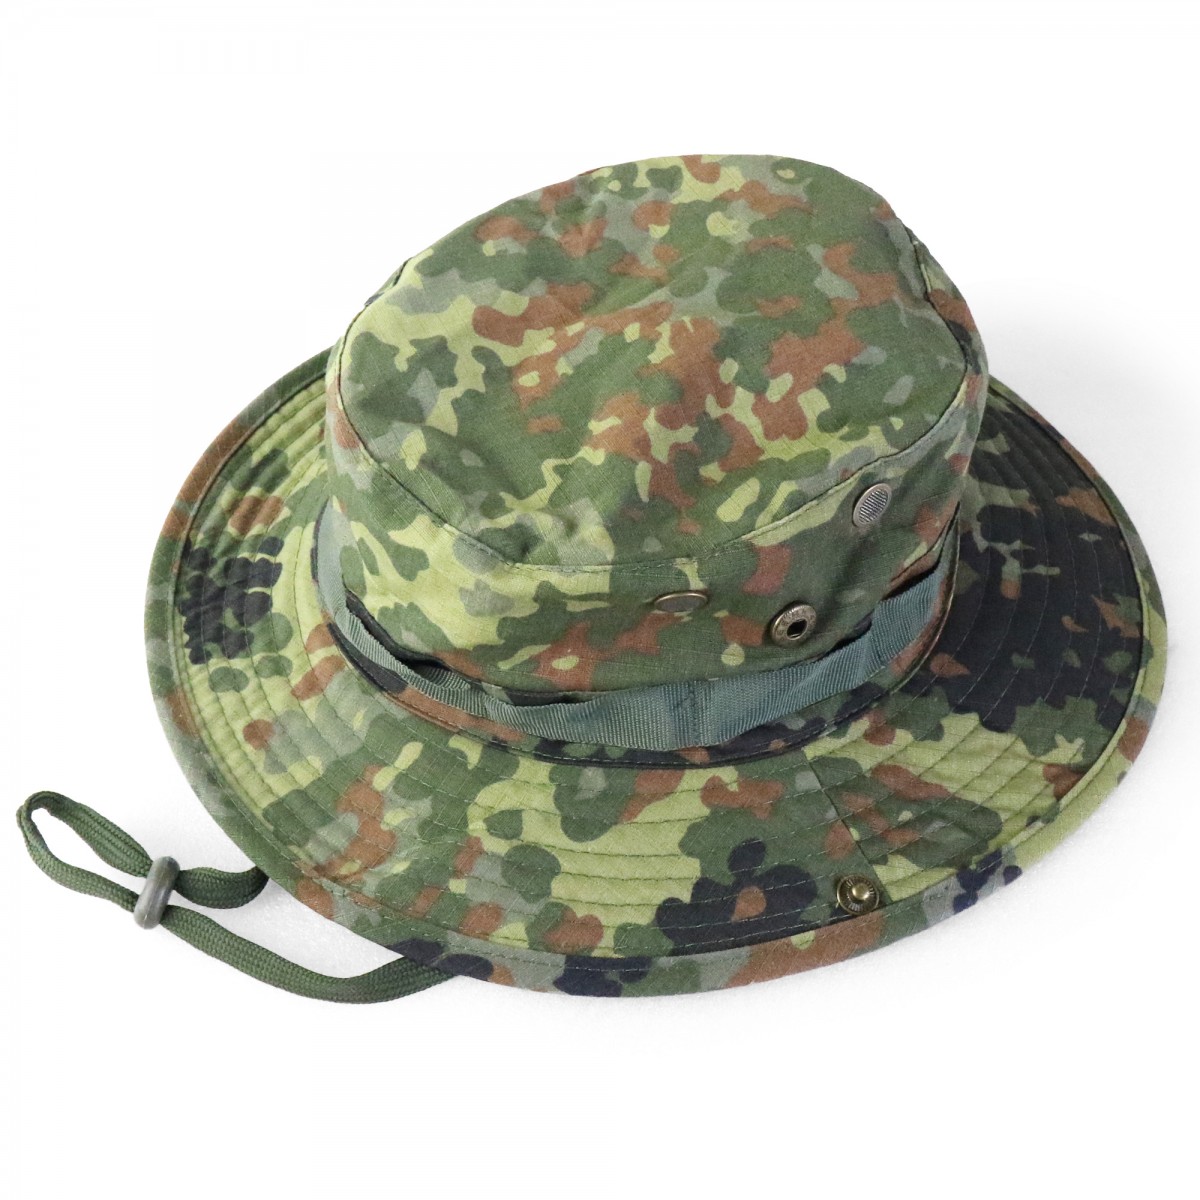 ブーニーハット ジャングルハット フリーサイズ 帽子